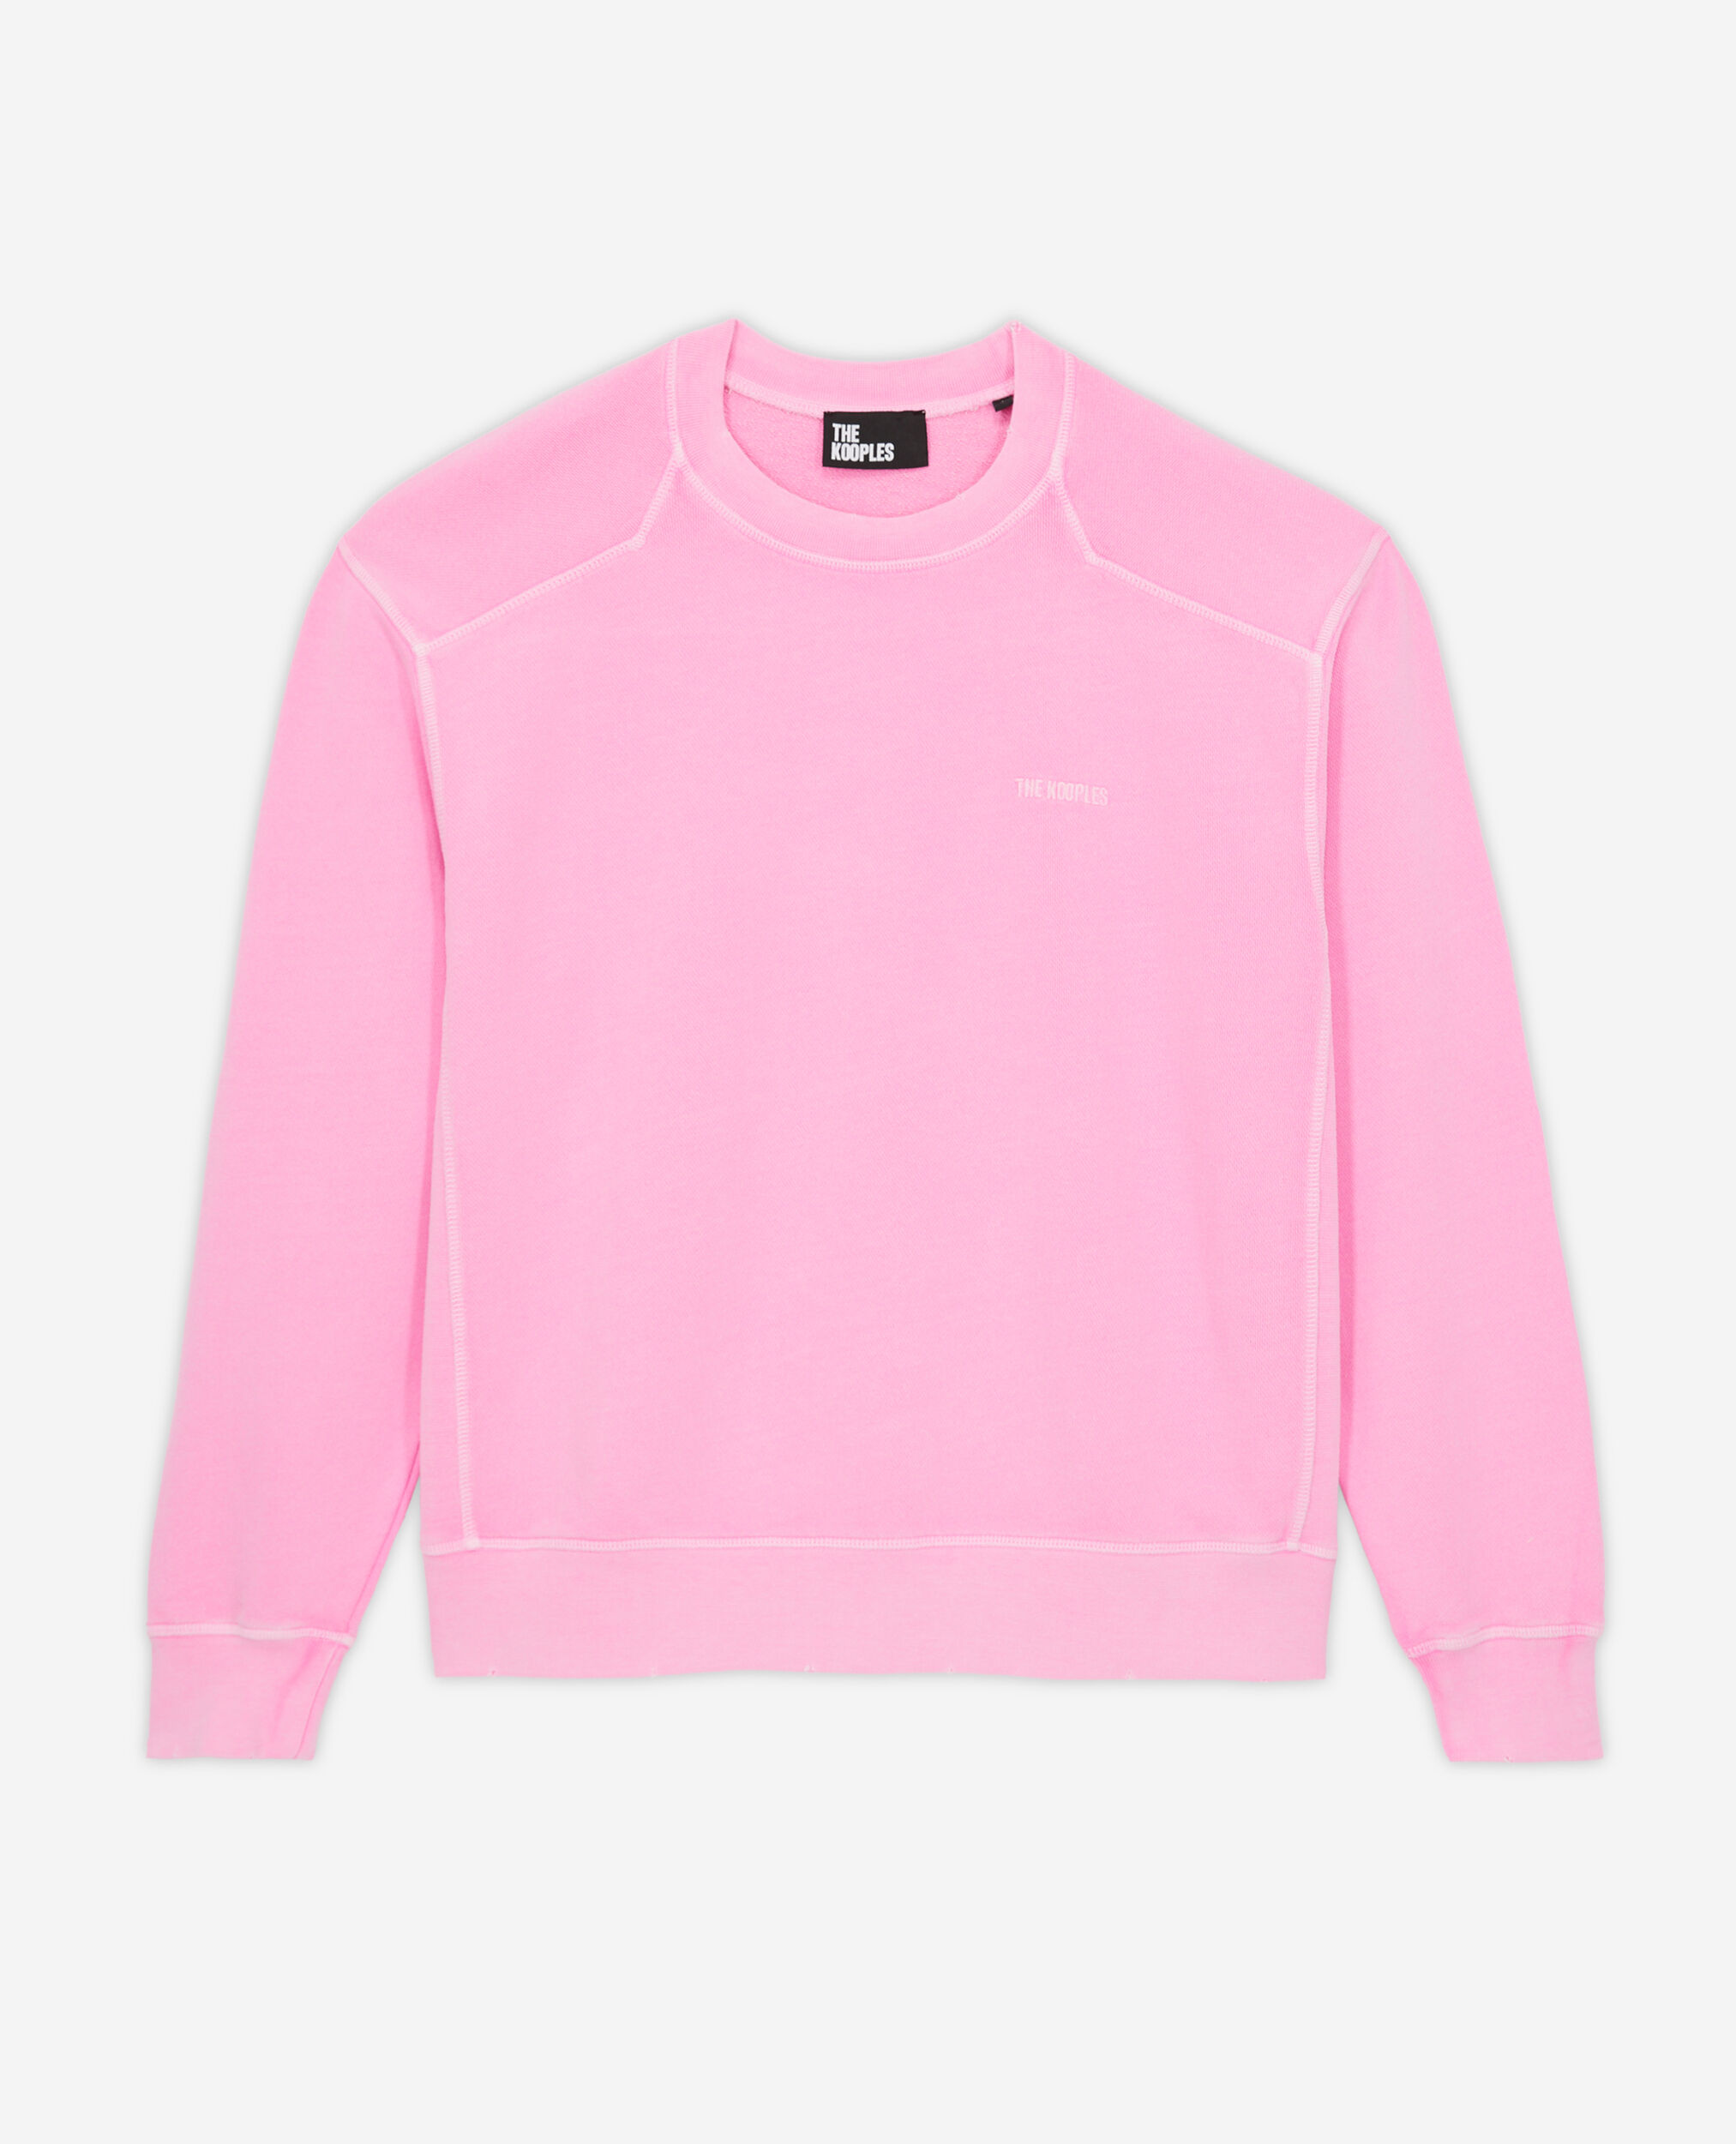 Sweatshirt rose fluo avec logo, FLUO PINK, hi-res image number null